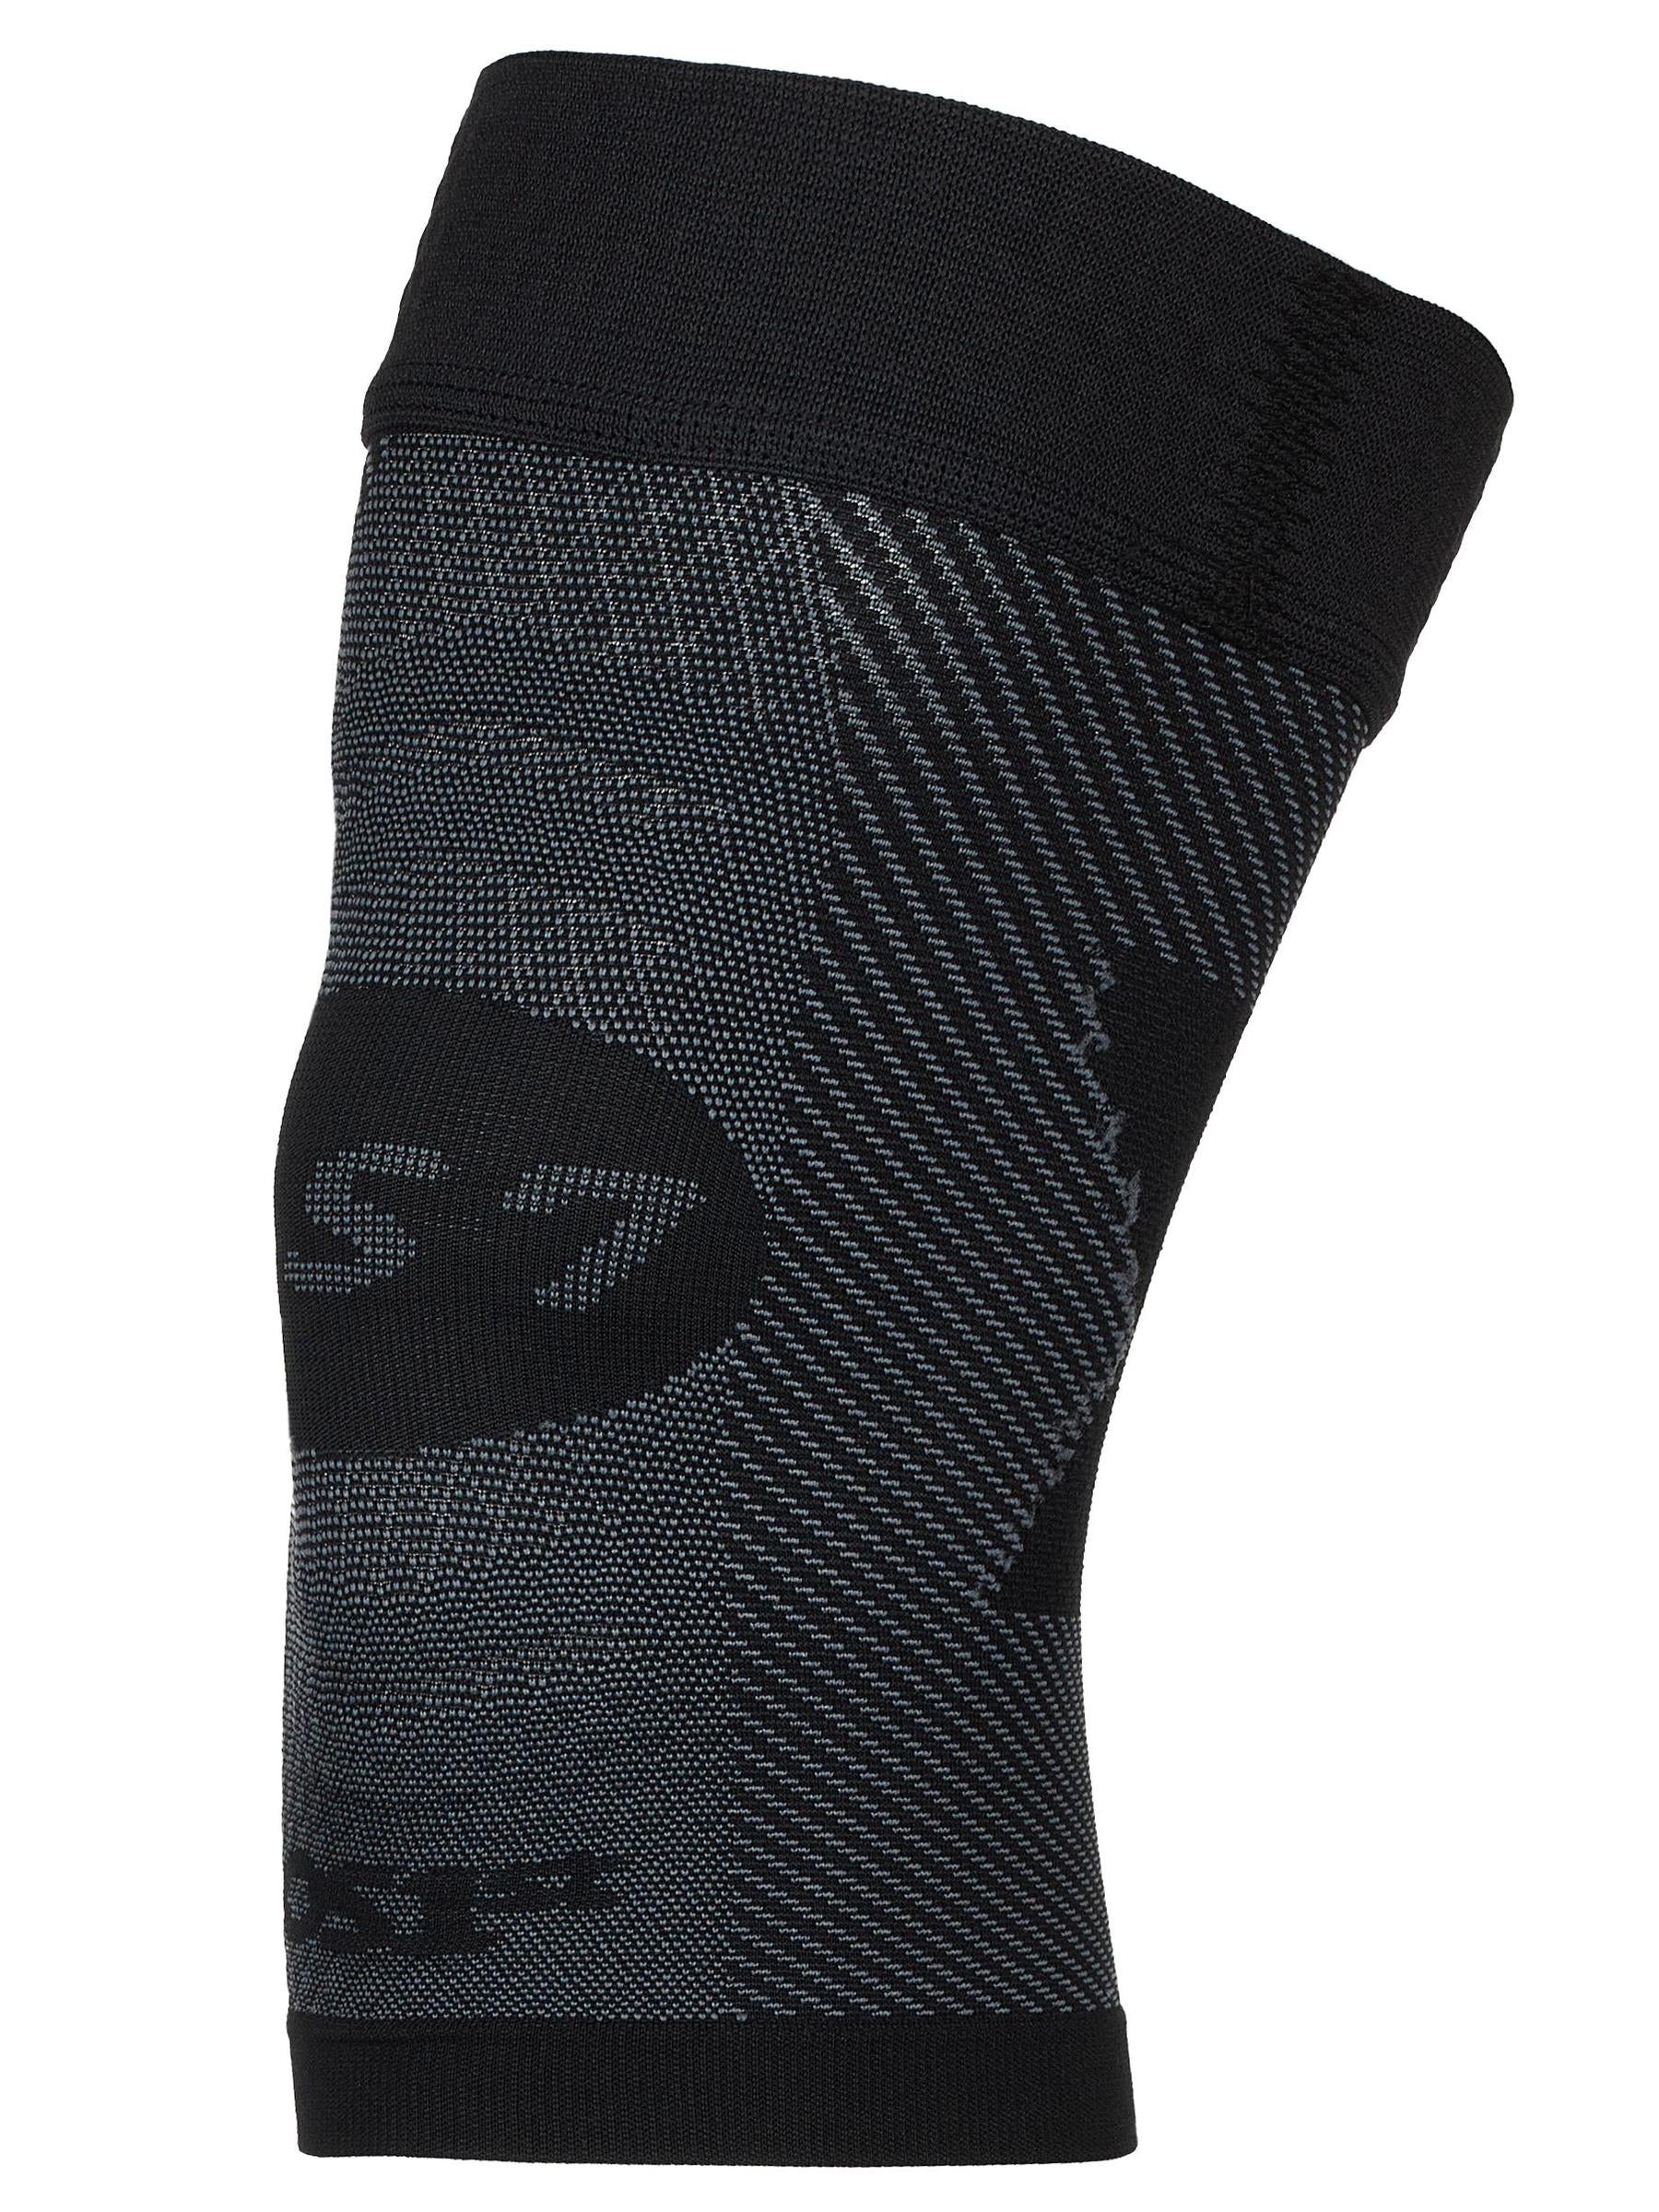 OS1st KS7 Performance Knee Sleeve Brace Black L 